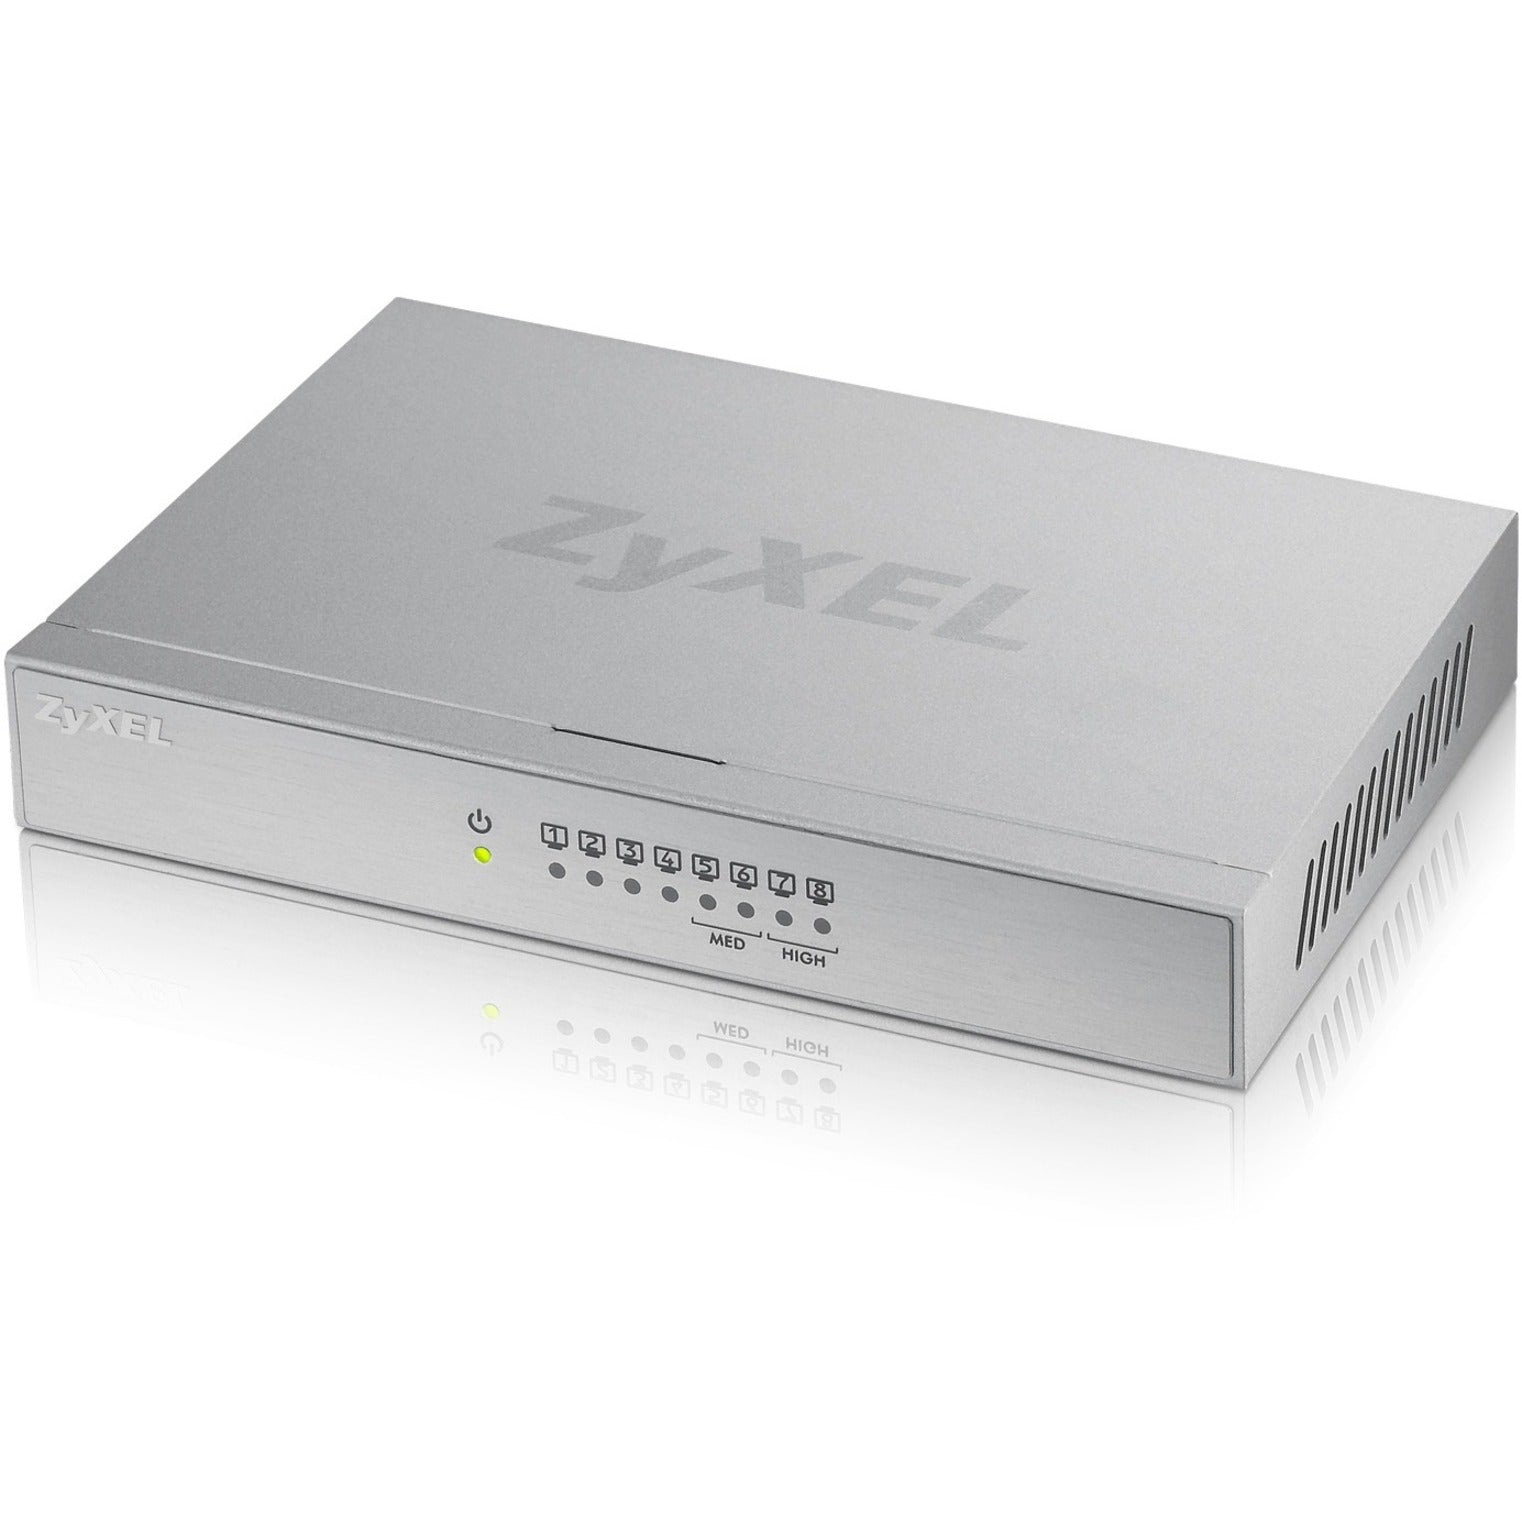 ZYXEL GS108BV3 8-Port Desktop Gigabit Ethernet Switch, 5 Year Warranty, RoHS Certified